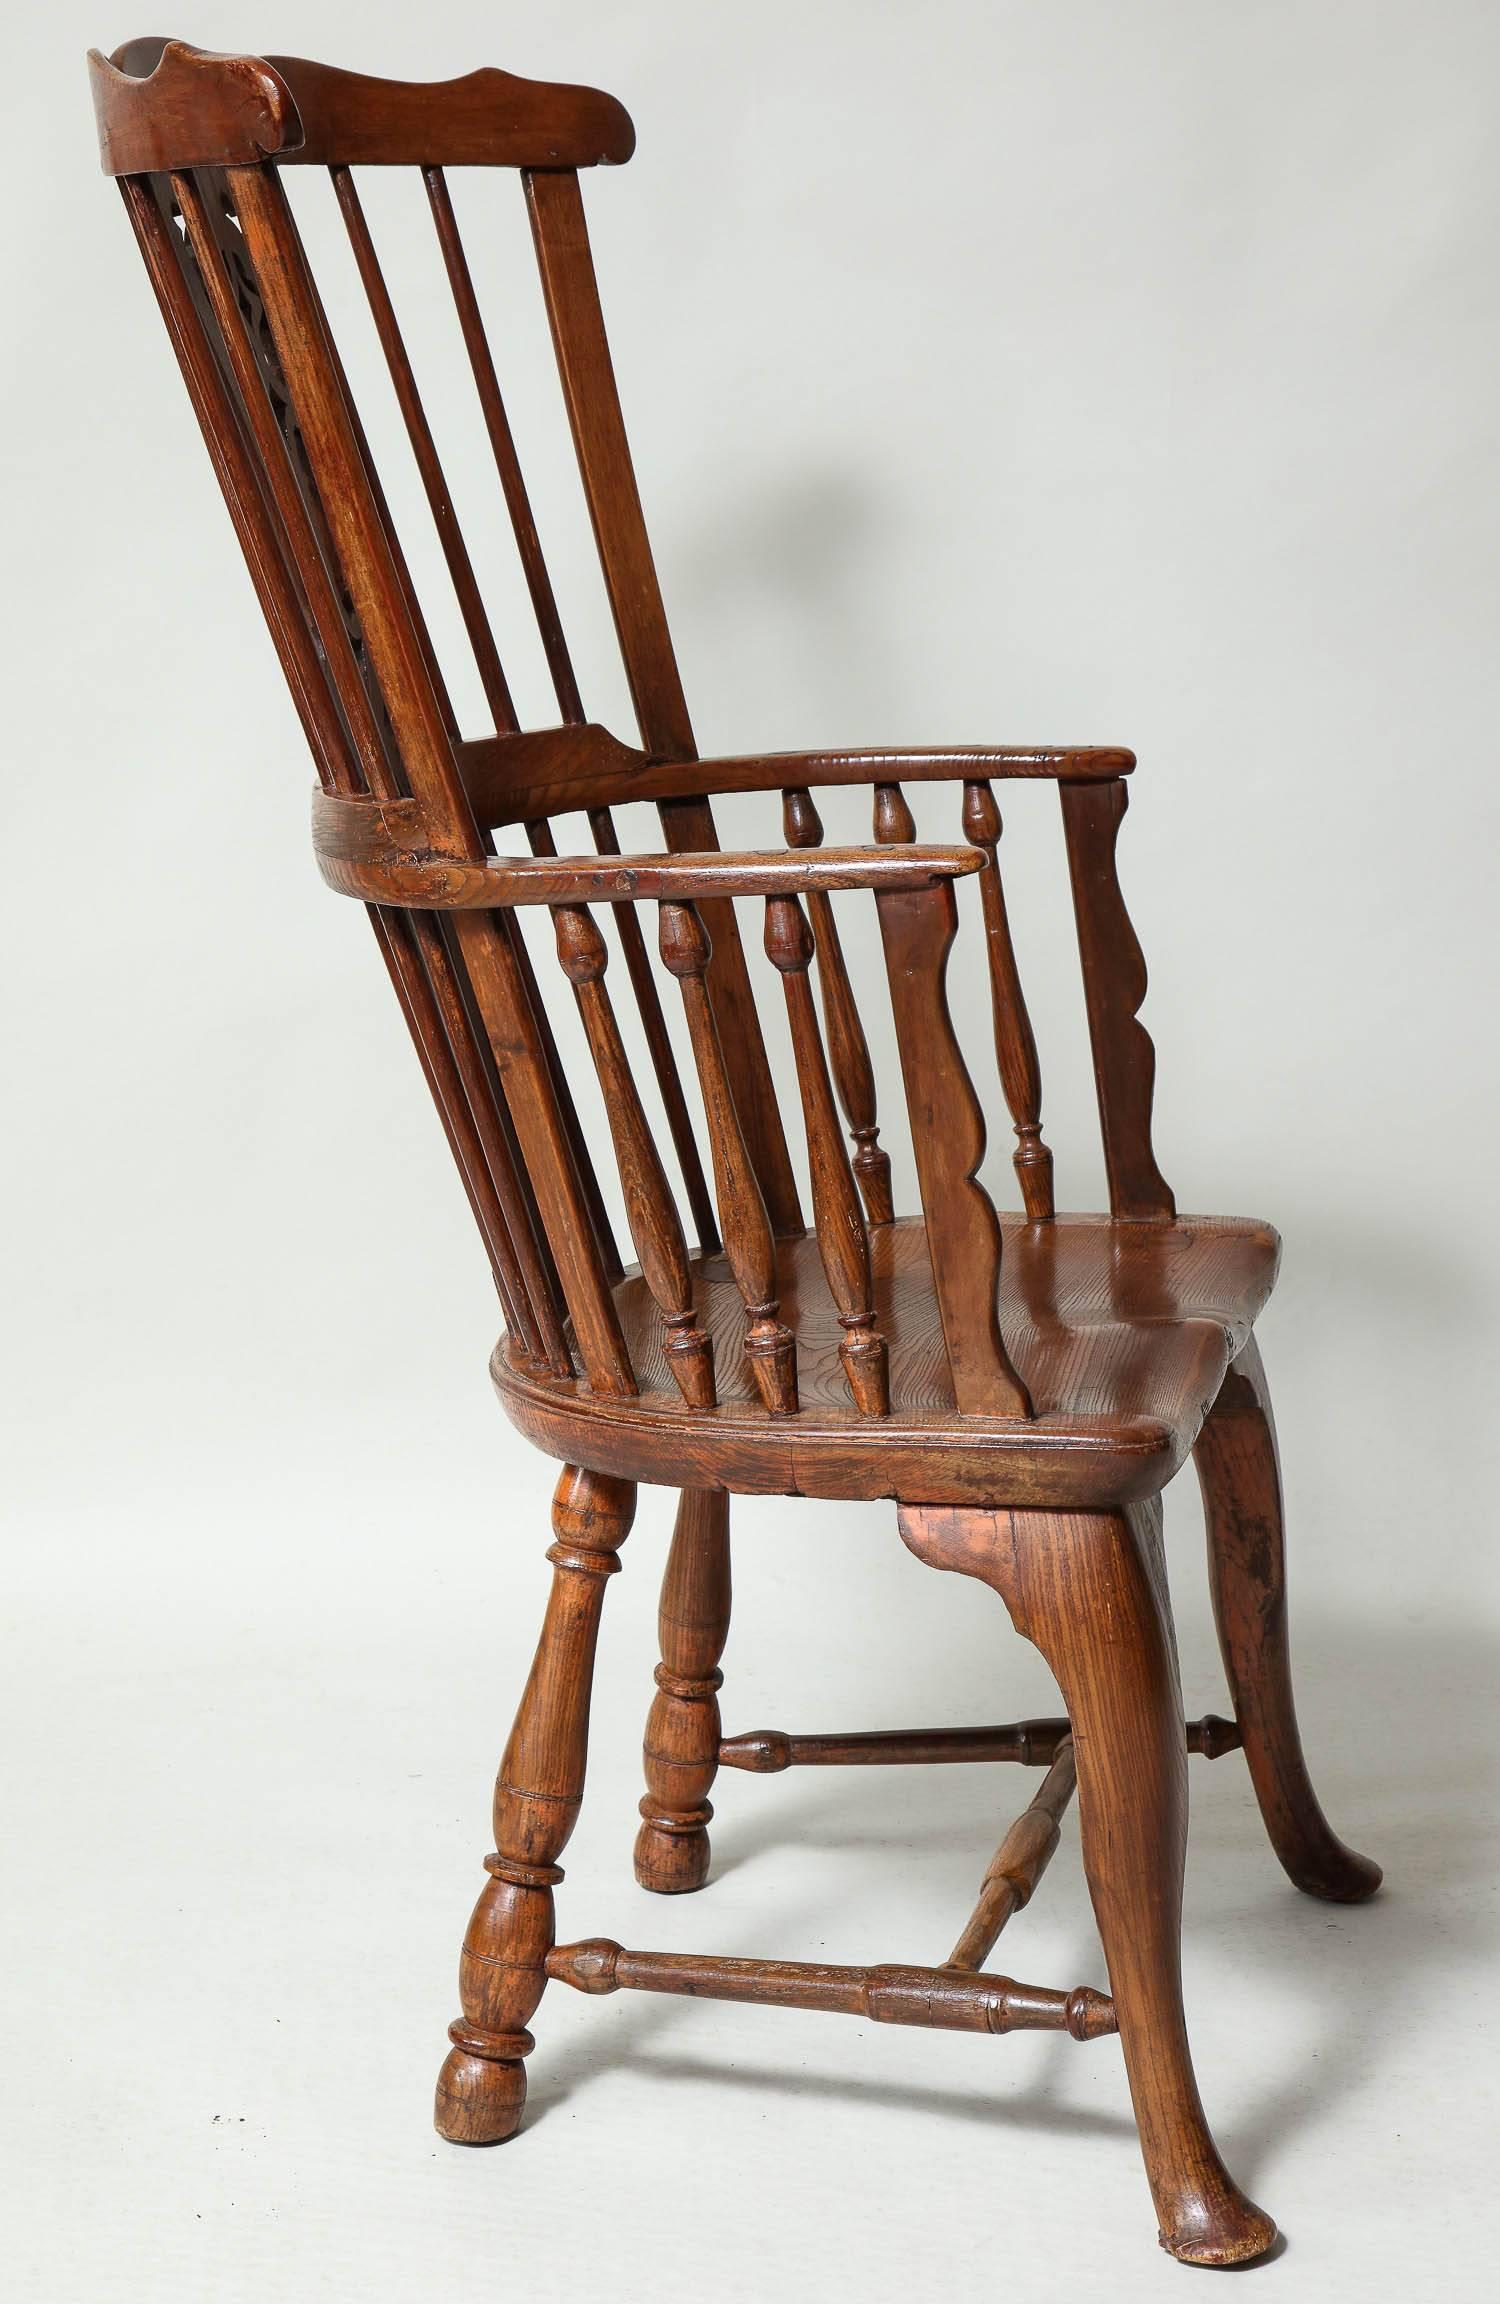 Grande-Bretagne (UK) Exceptionnel fauteuil Windsor du 18ème siècle